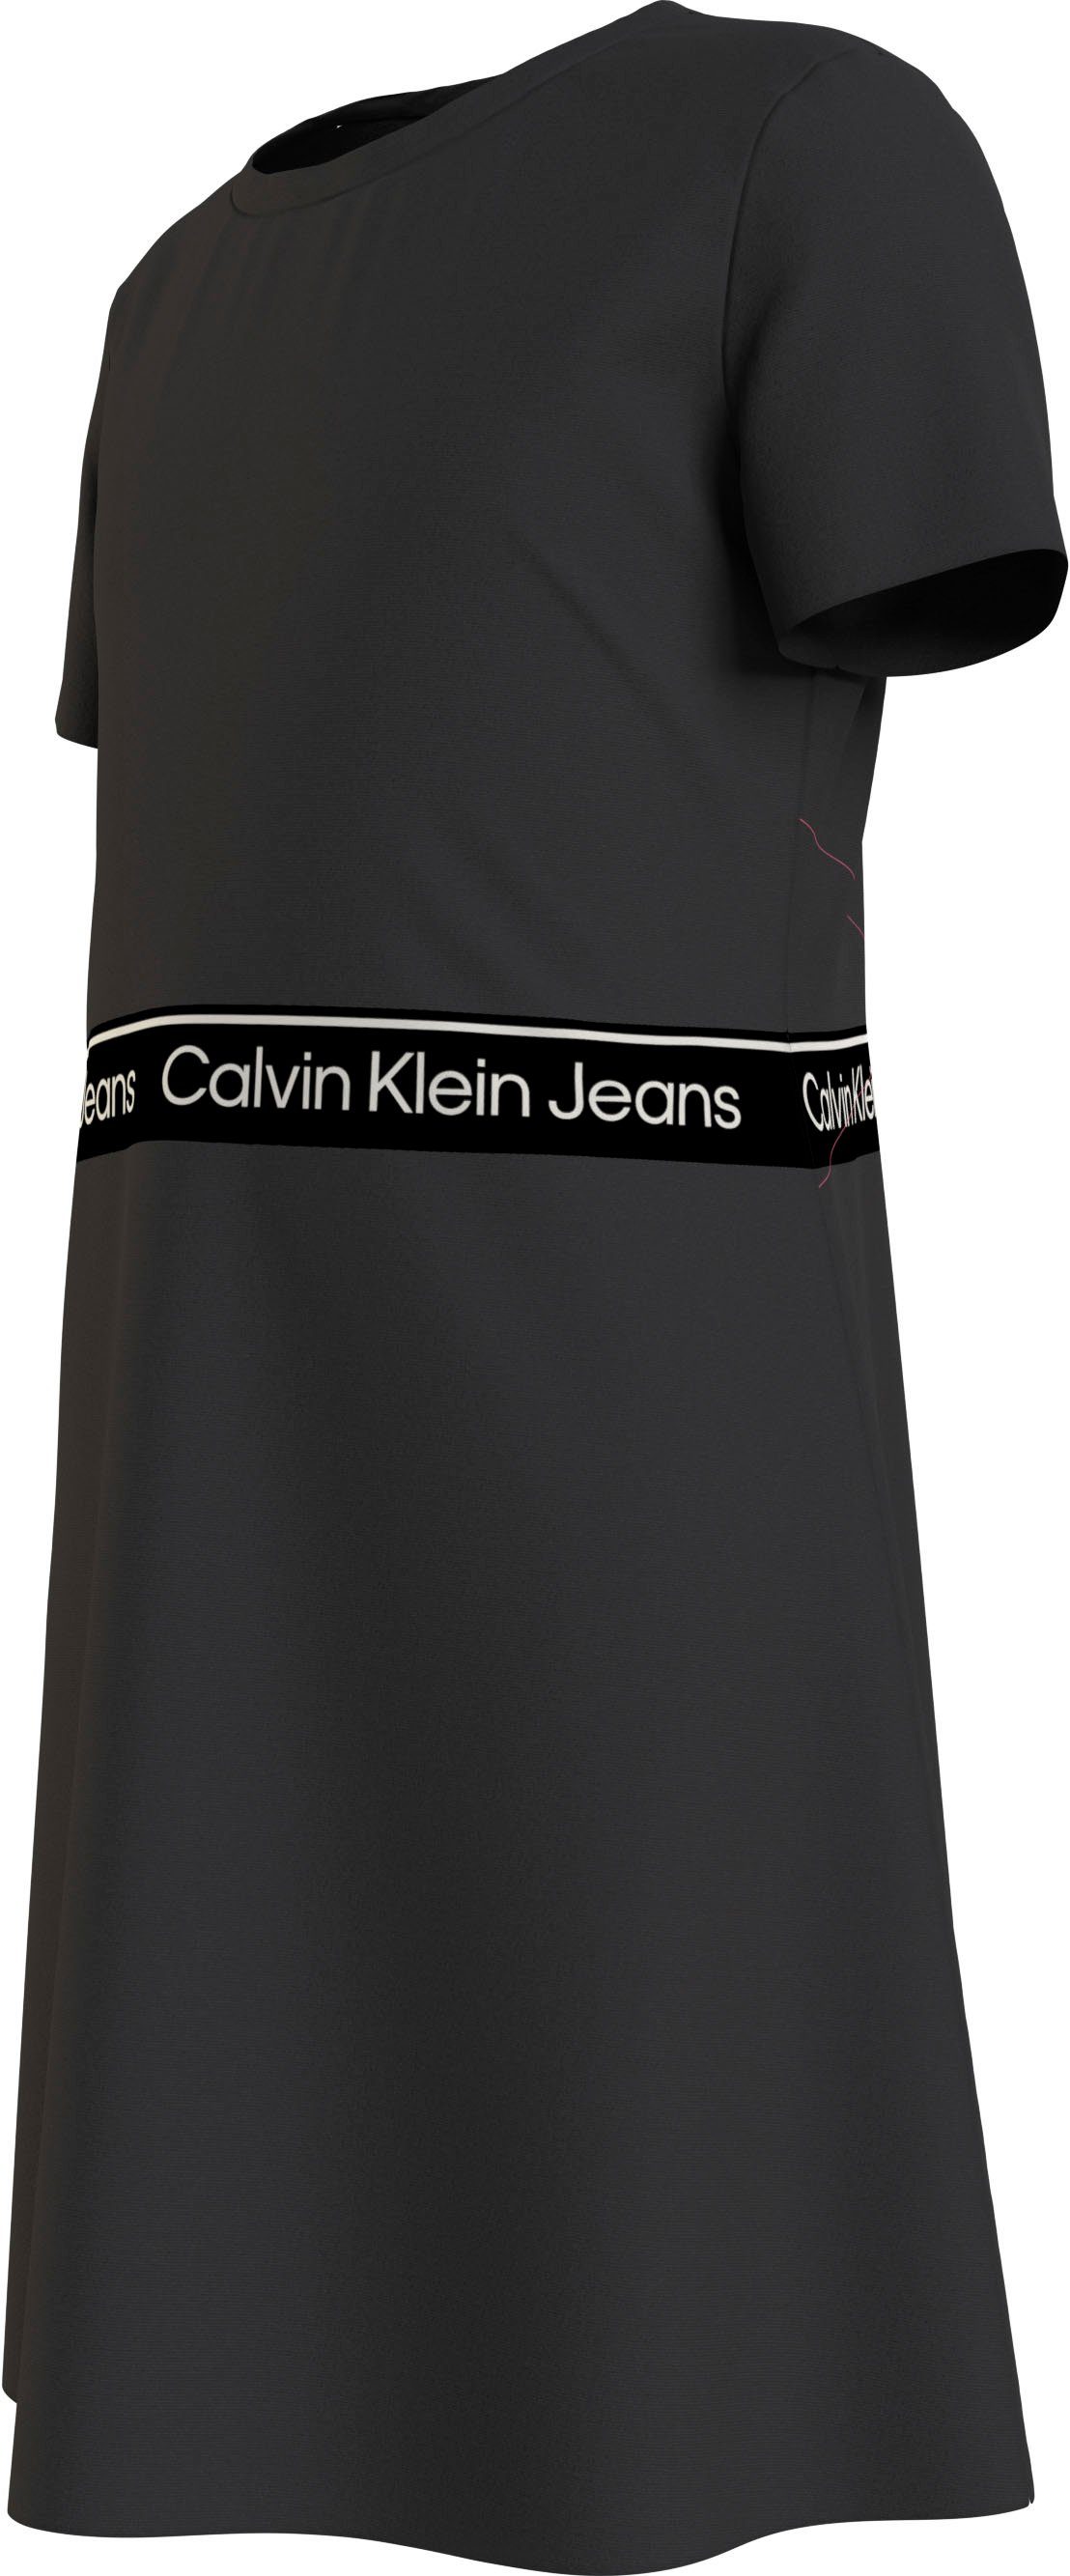 Calvin Klein Jeans Skaterkleid LOGO DRESS PUNTO SS Black TAPE Ck